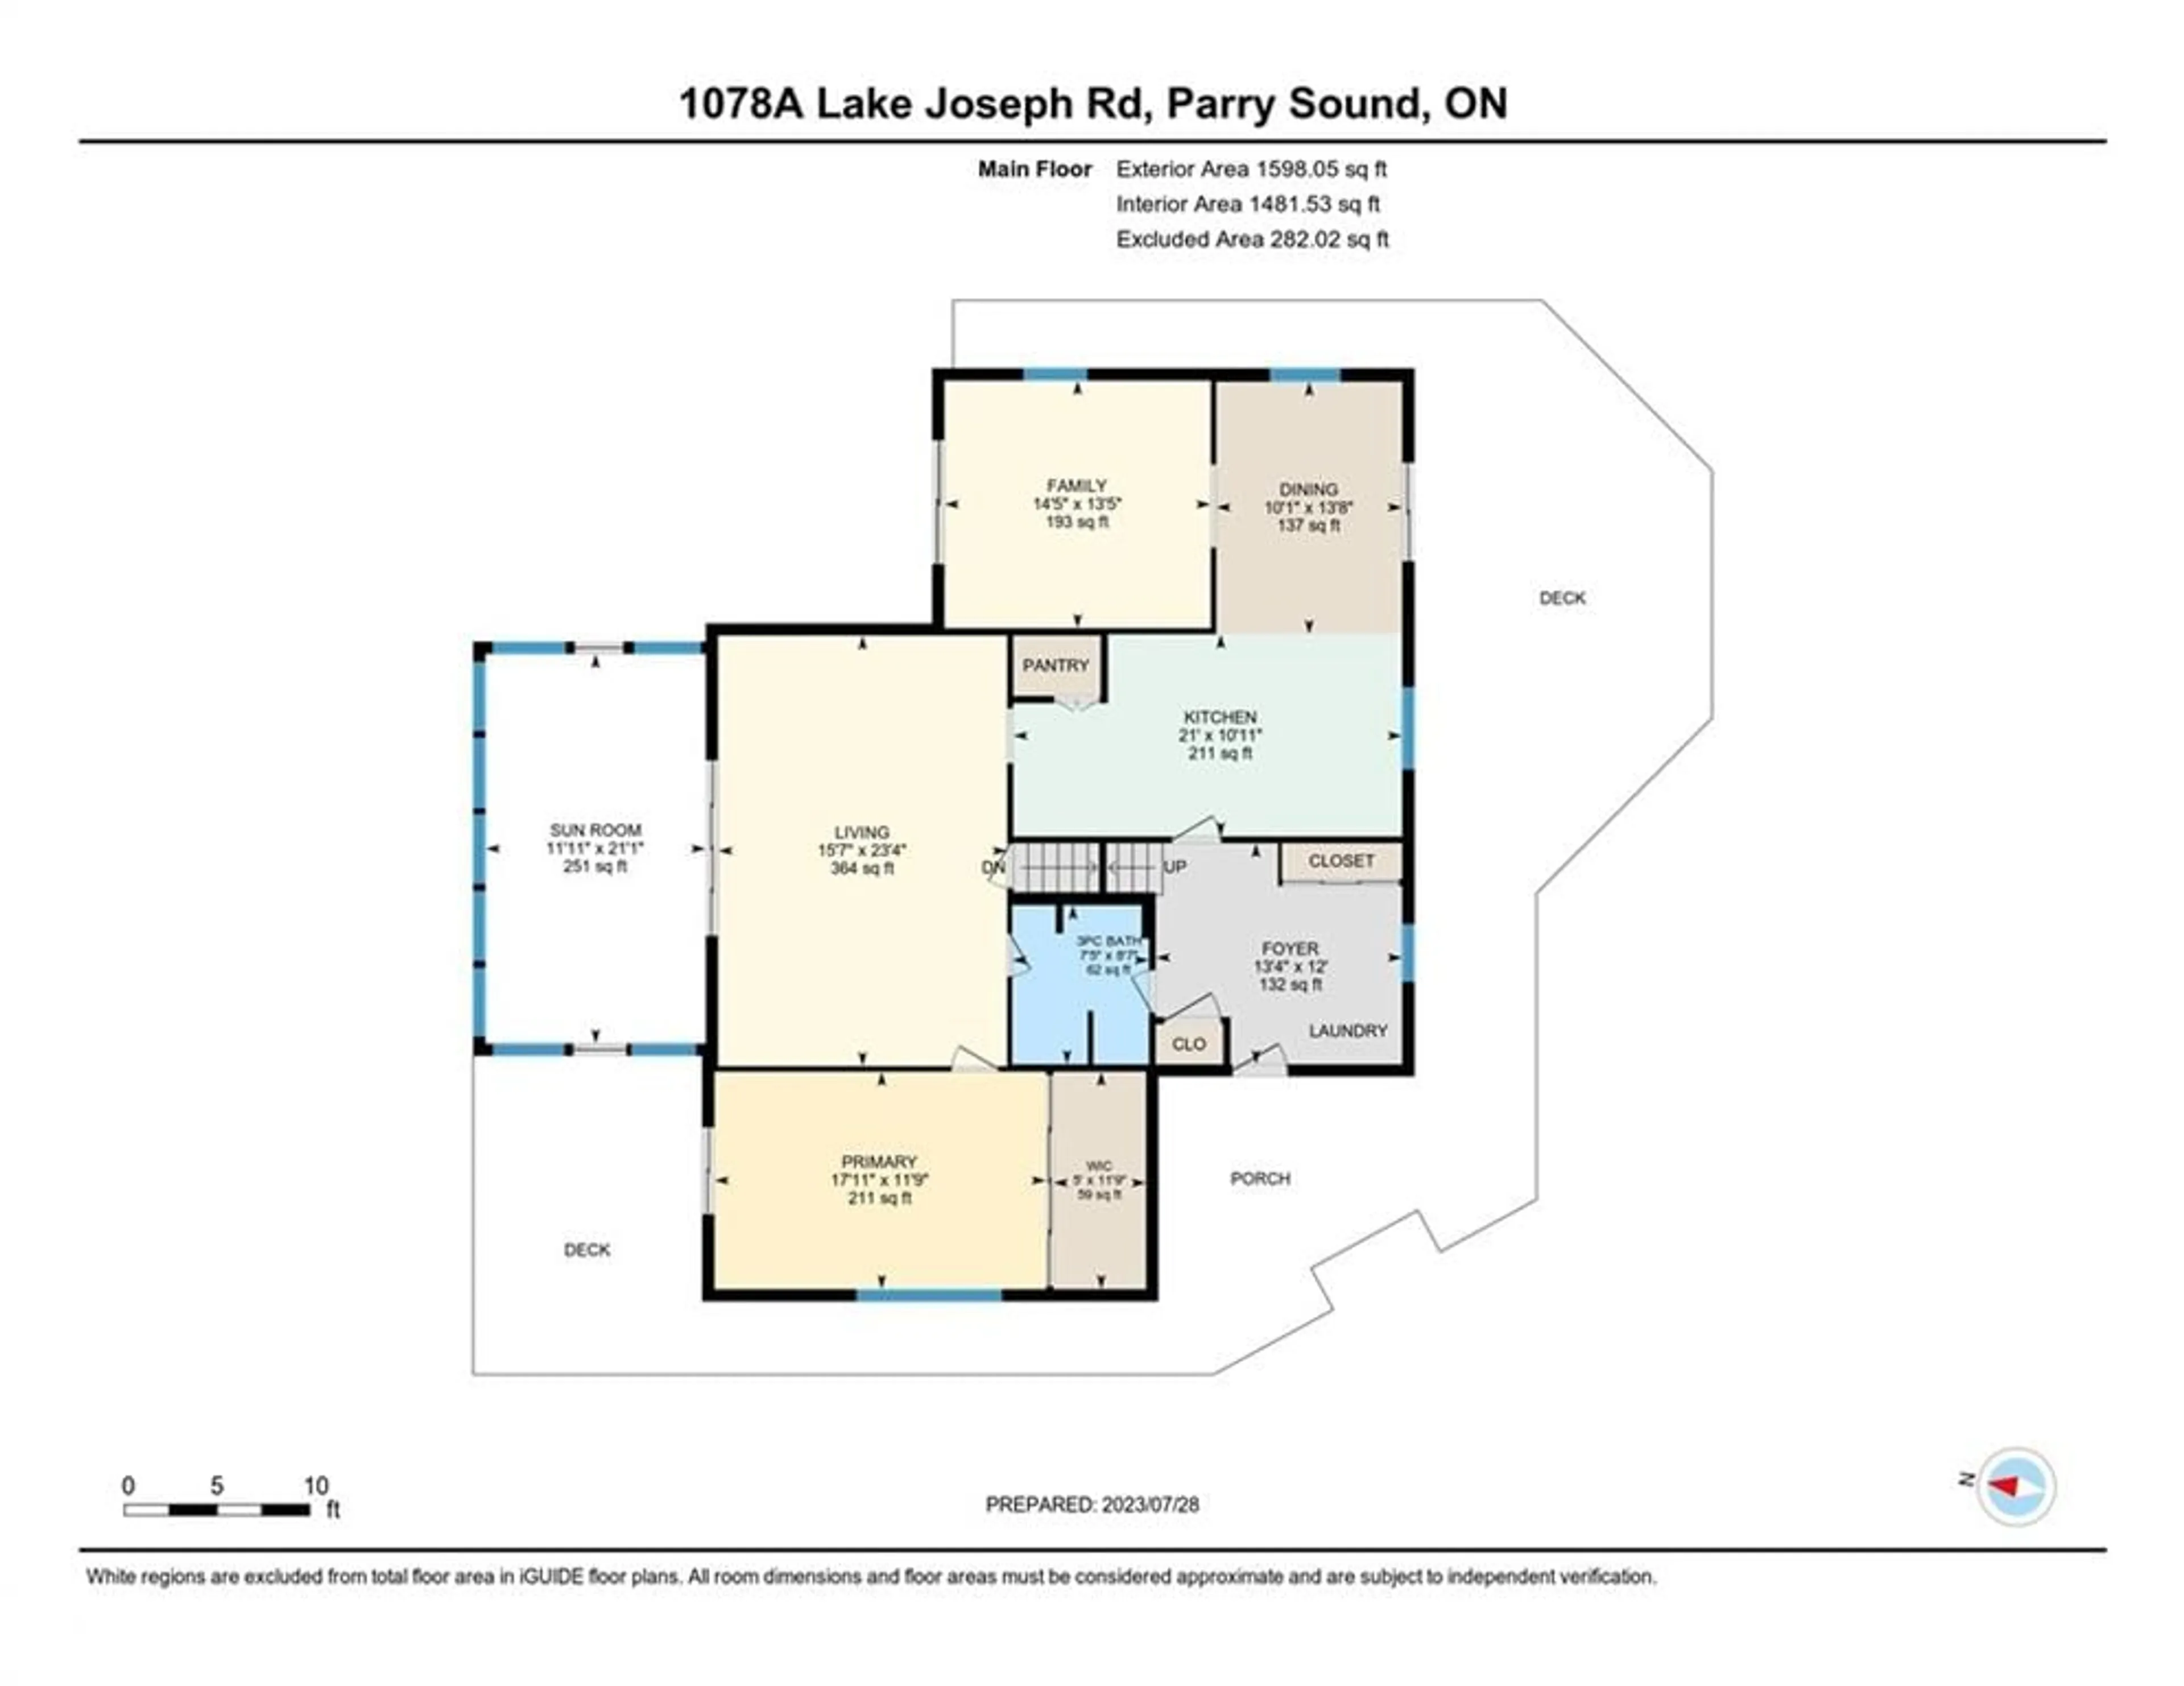 Floor plan for 1078A Lake Joseph Rd, Seguin Ontario P2A 2W8